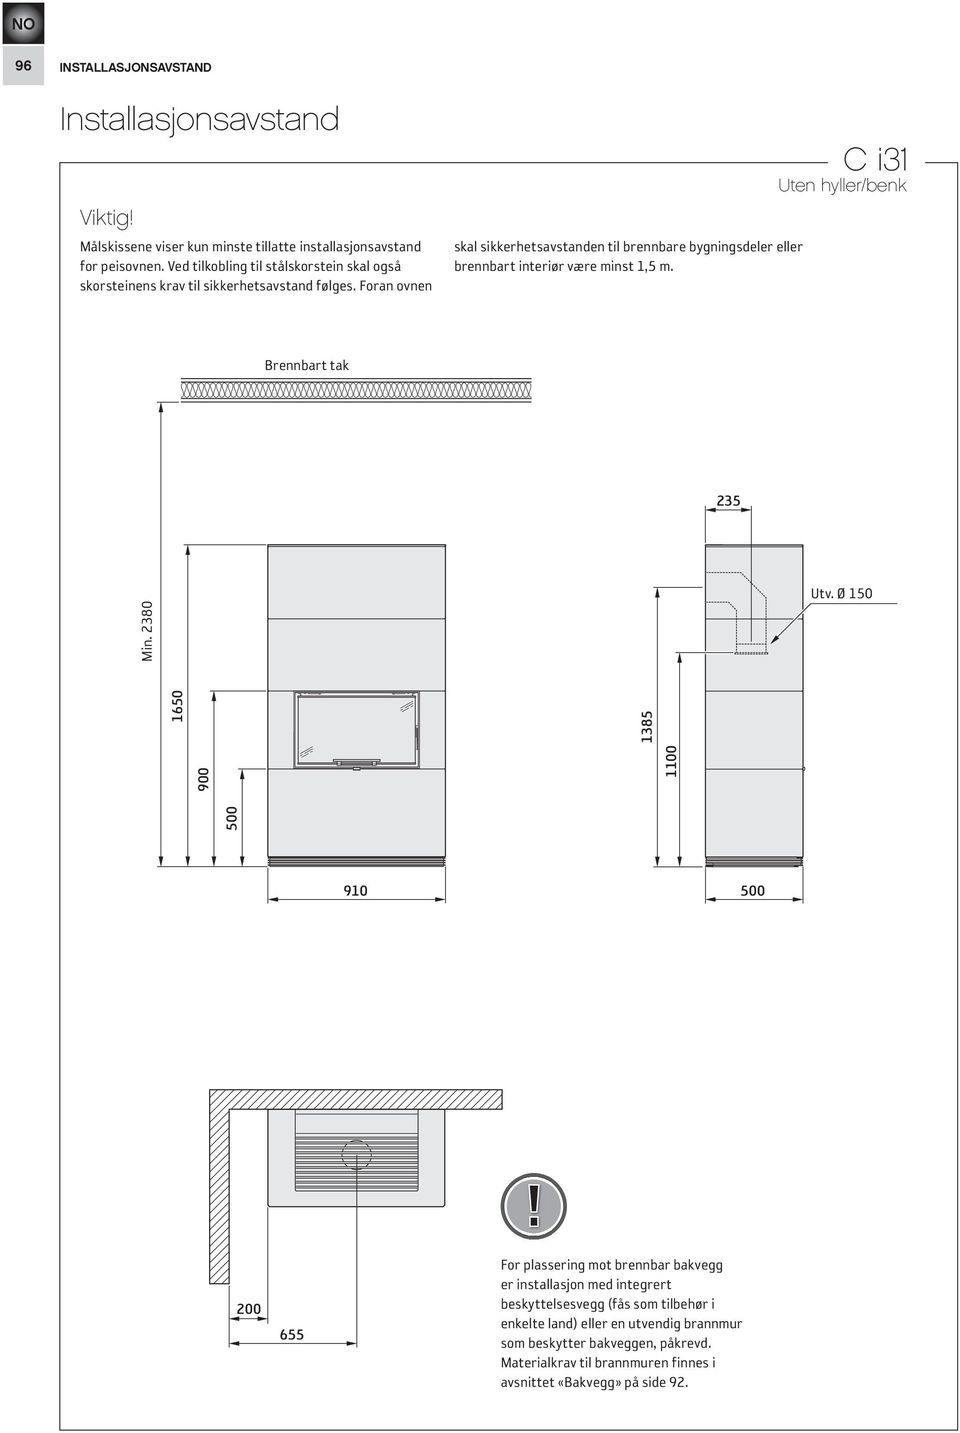 Foran ovnen skal sikkerhetsavstanden til brennbare bygningsdeler eller brennbart interiør være minst 1,5 m. C i31 Uten hyller/benk Brennbart Brännbart tak tak 235 Utv.